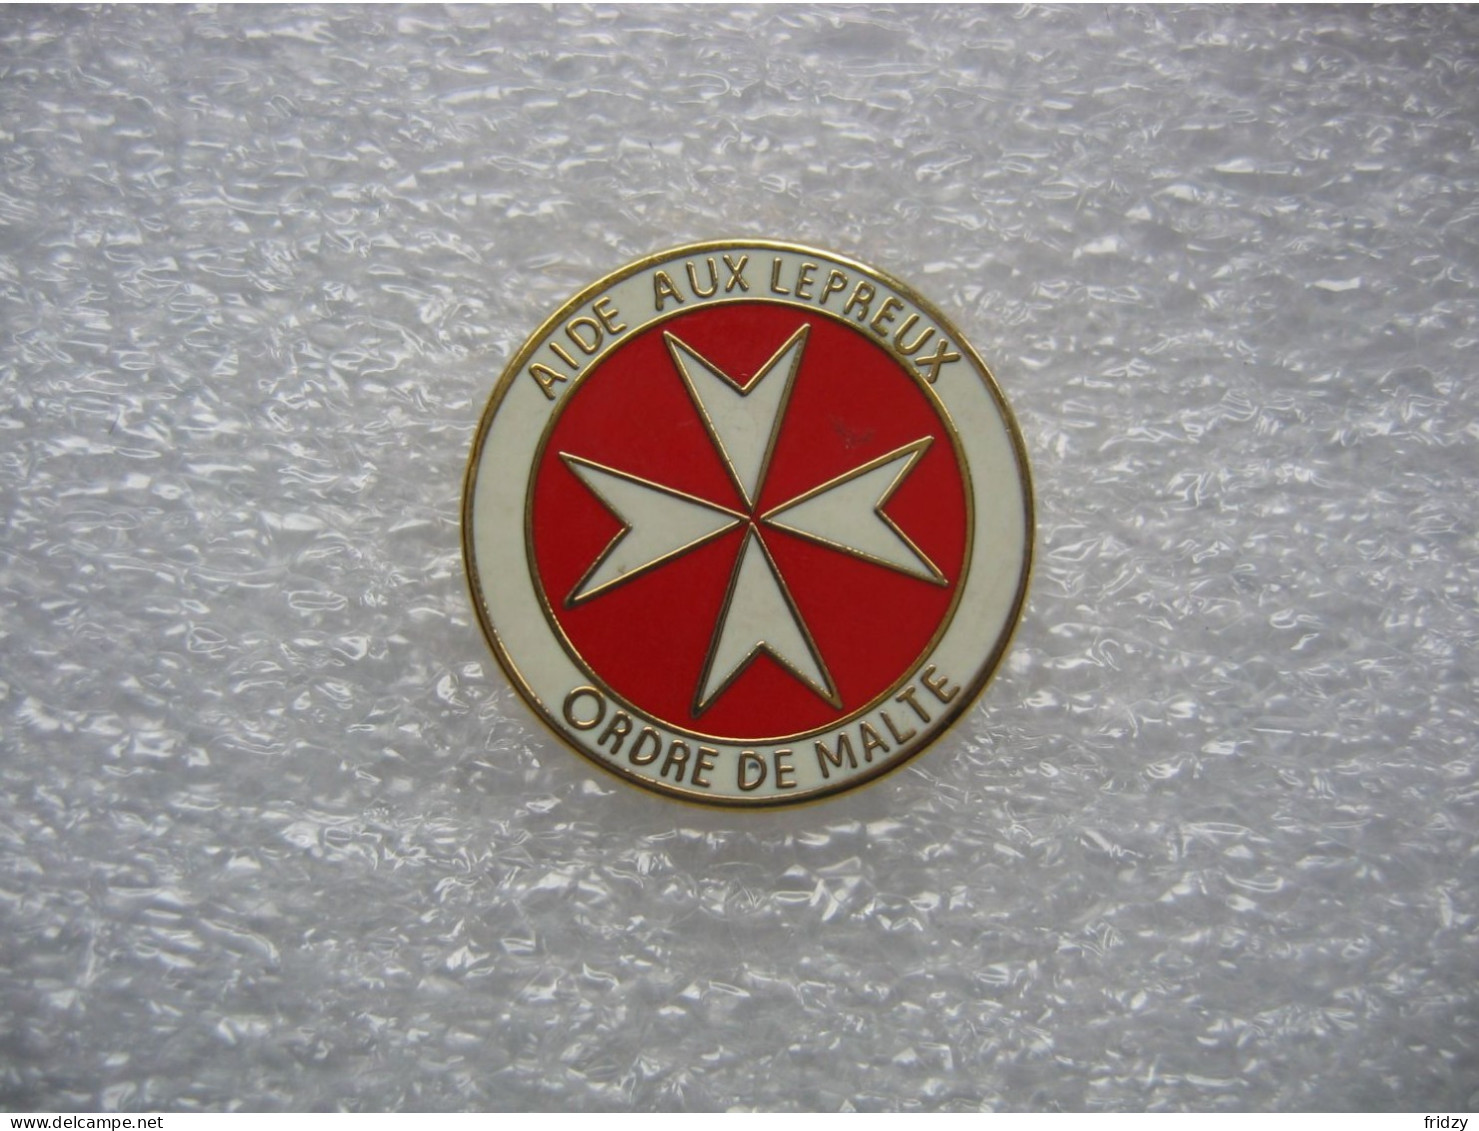 Pin's Emblème De Malte. Aide Aux Lépreux, Ordre De Malte - Medizin